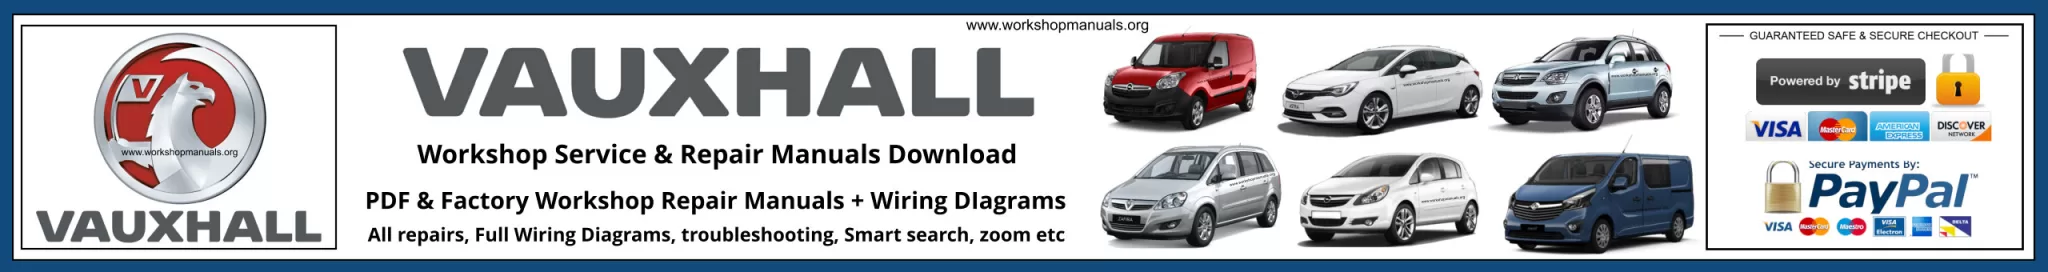 Vauxhall Workshop Repair Manual Banner